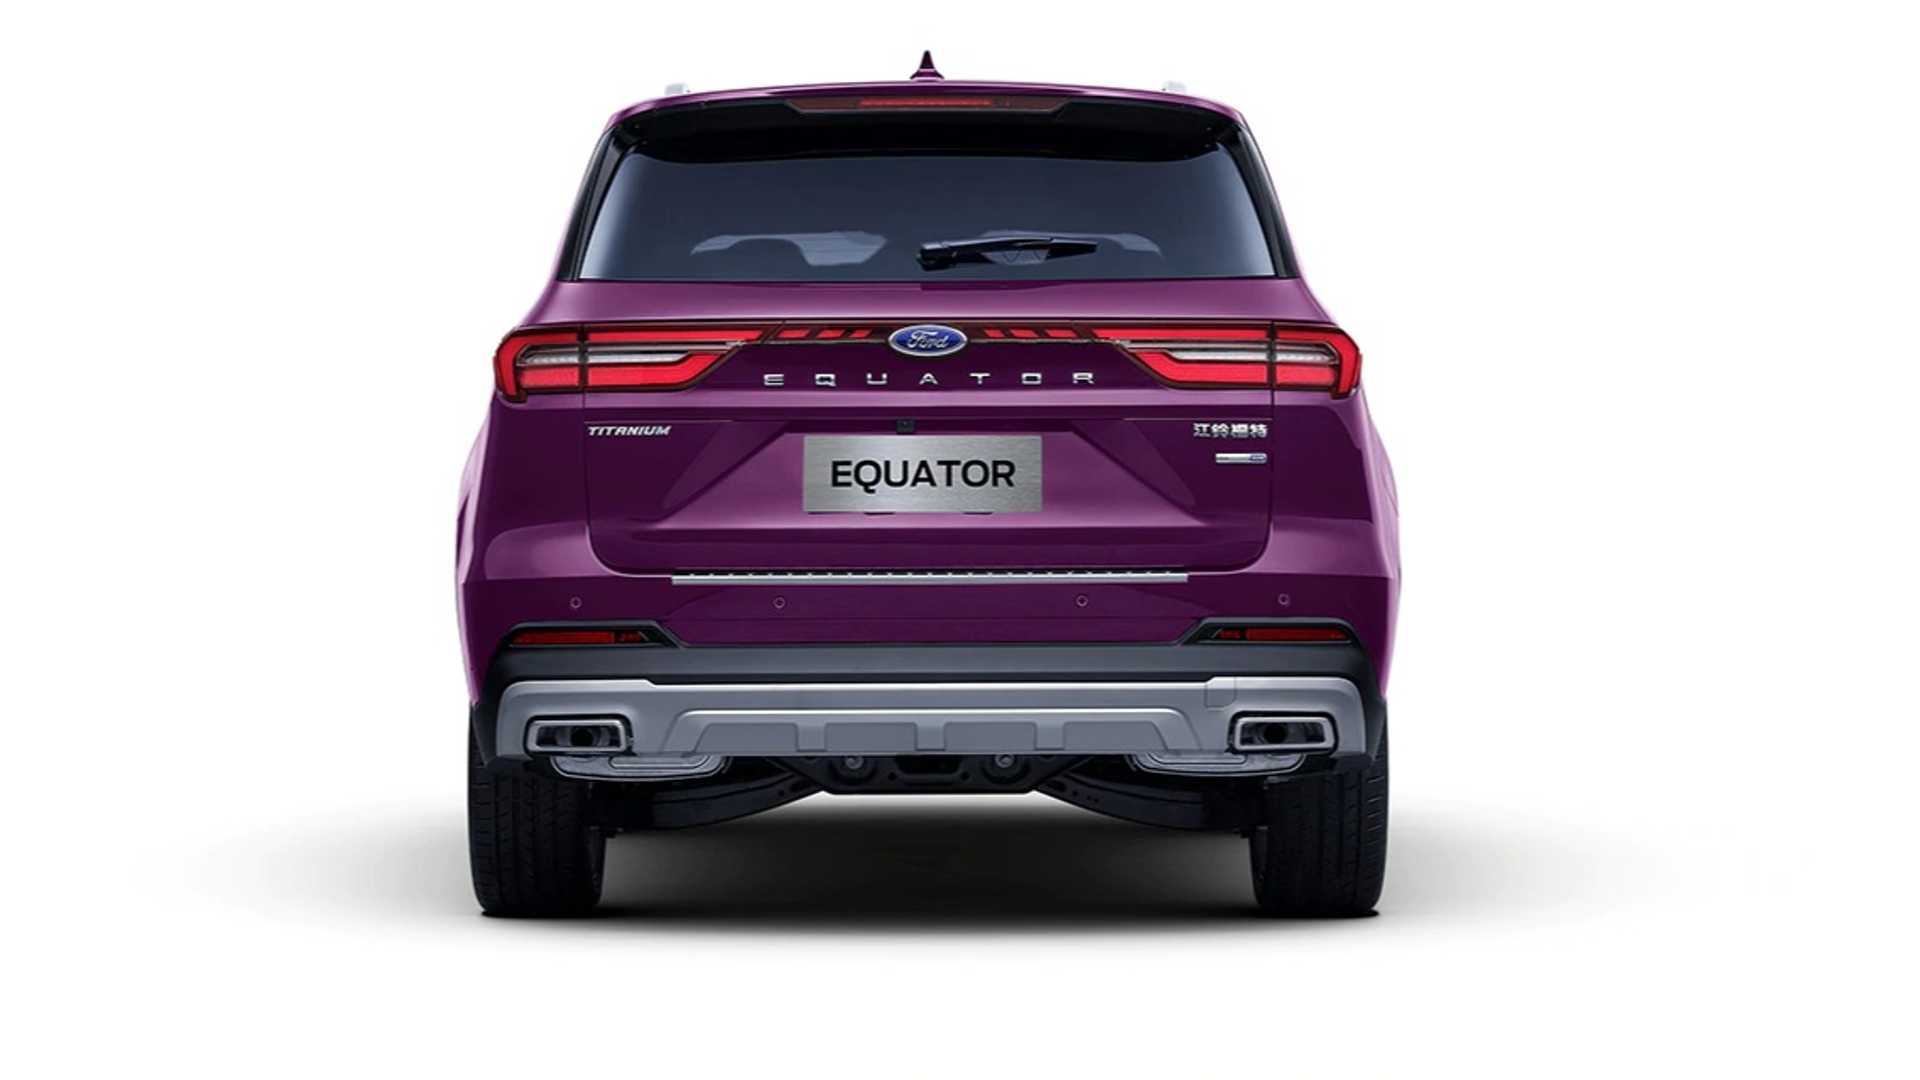 نمای عقب شاسی بلند فورد اکویتور / Ford Equator SUV رنگ بنفش